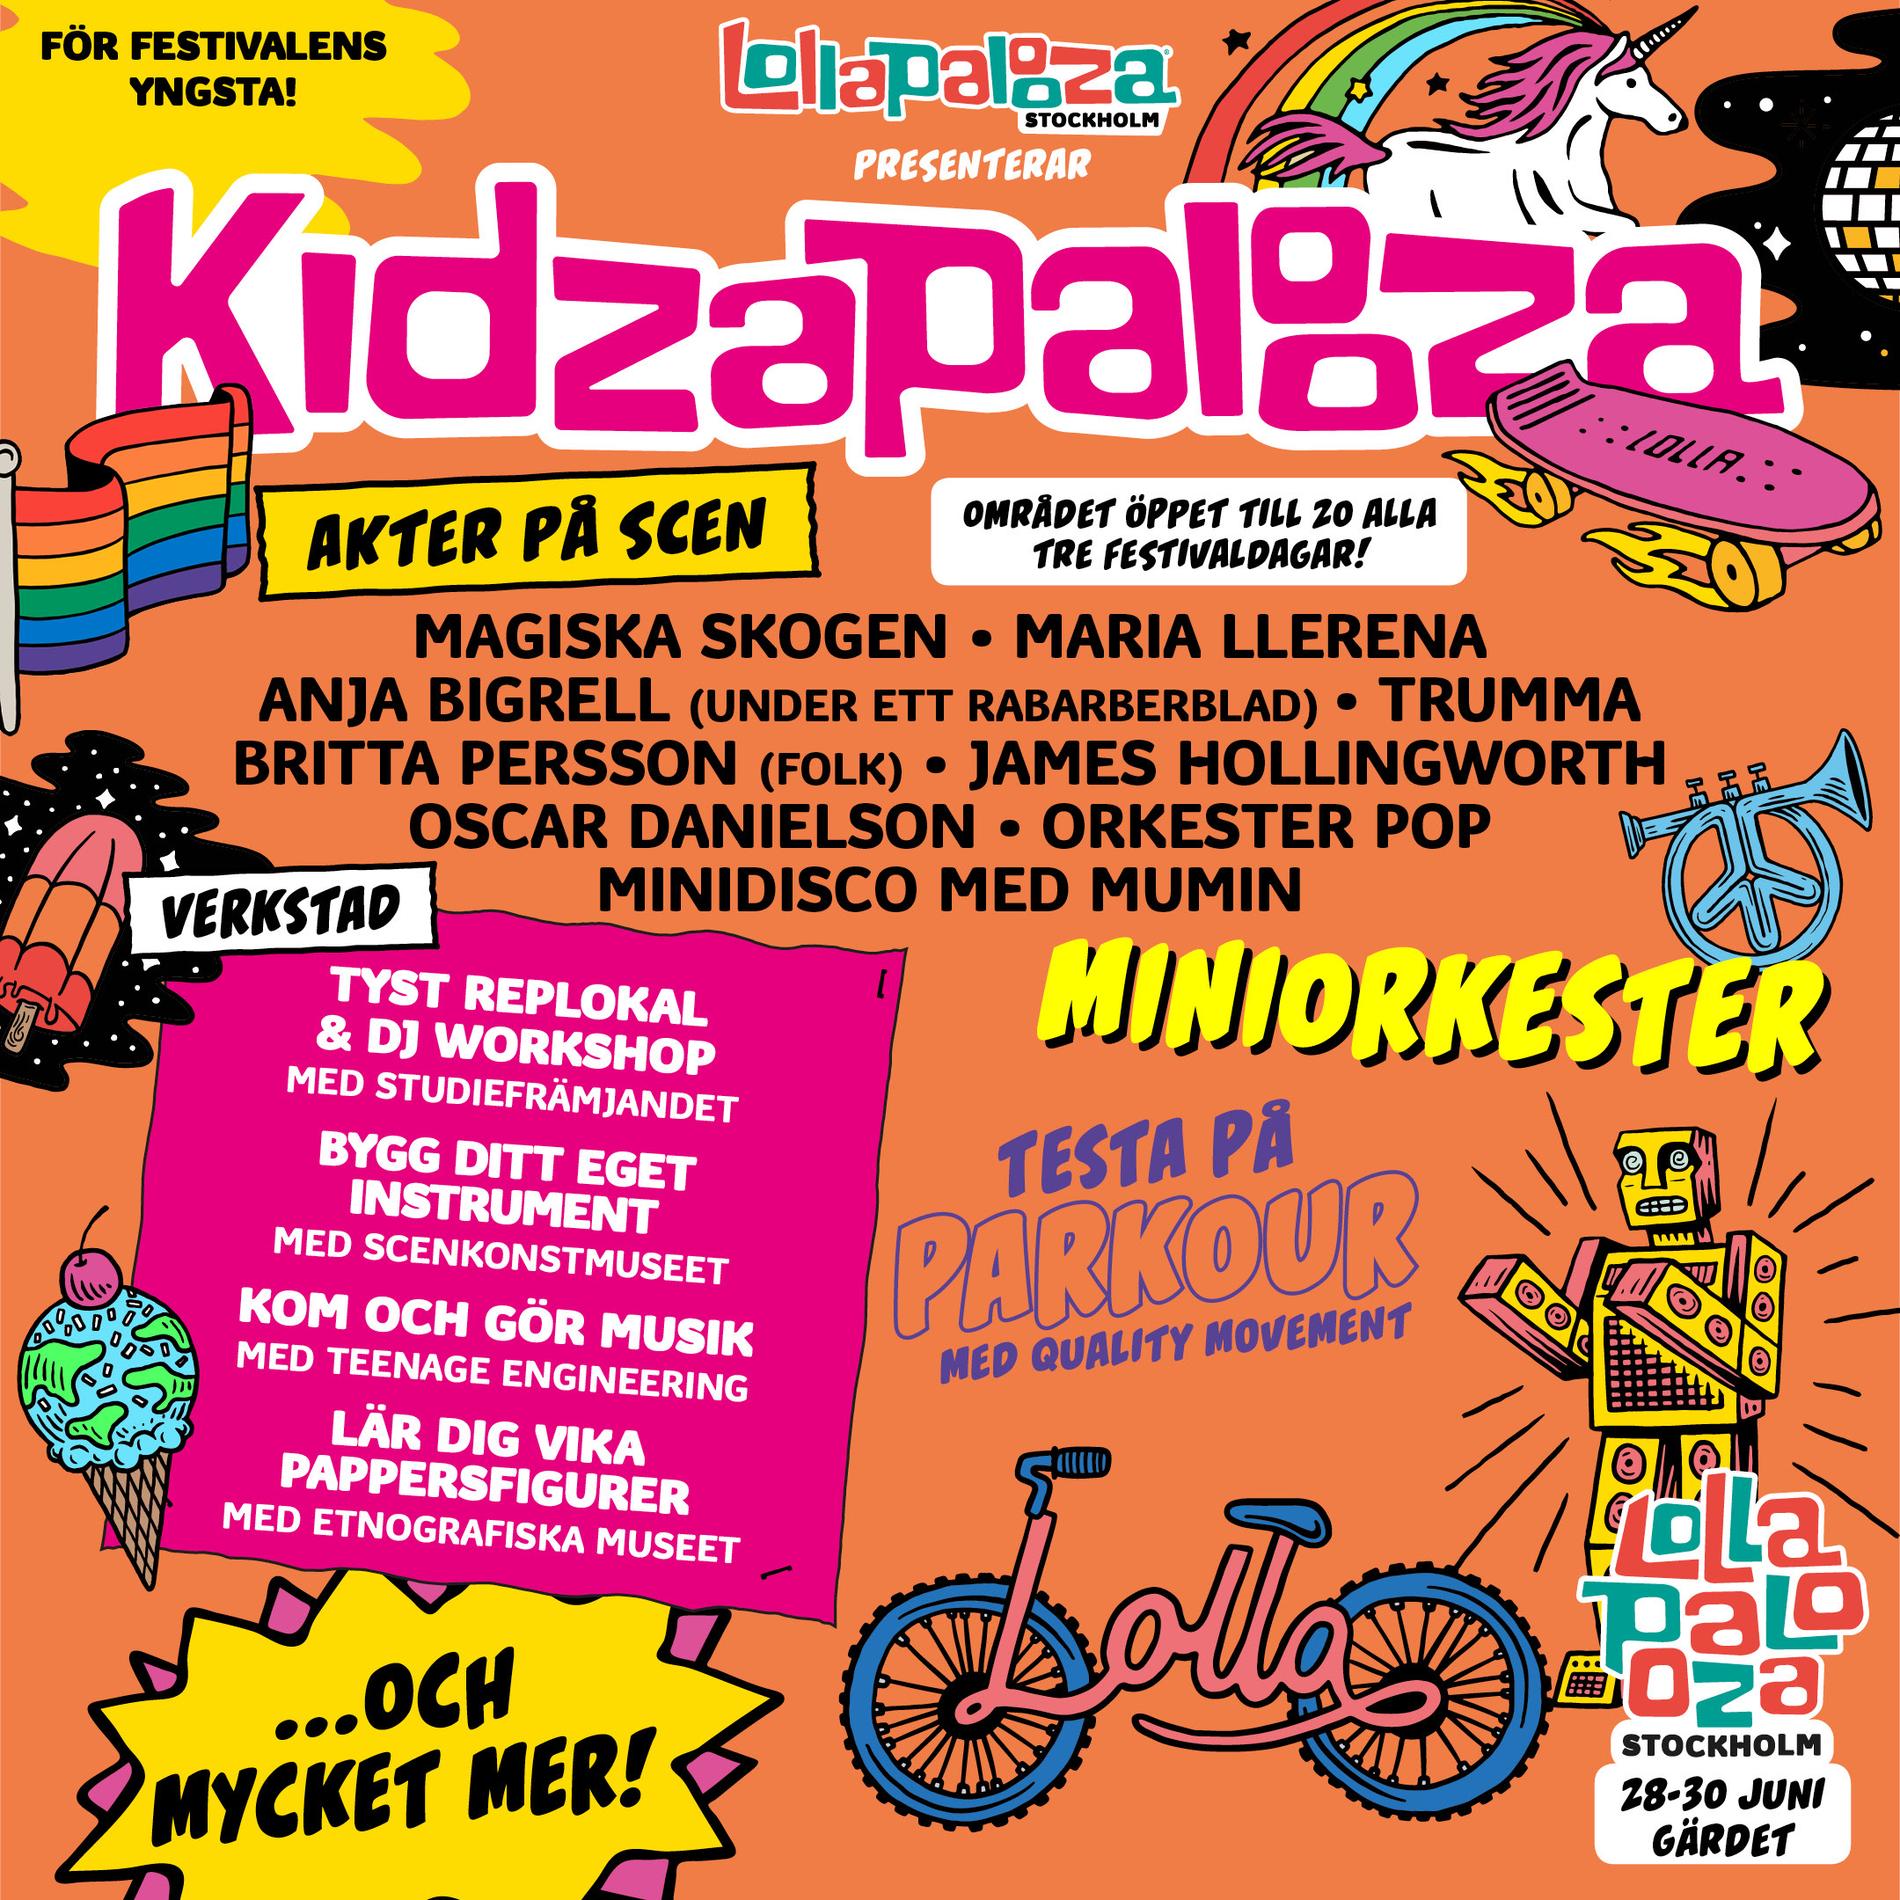 Programmet för Kidzapalooza.